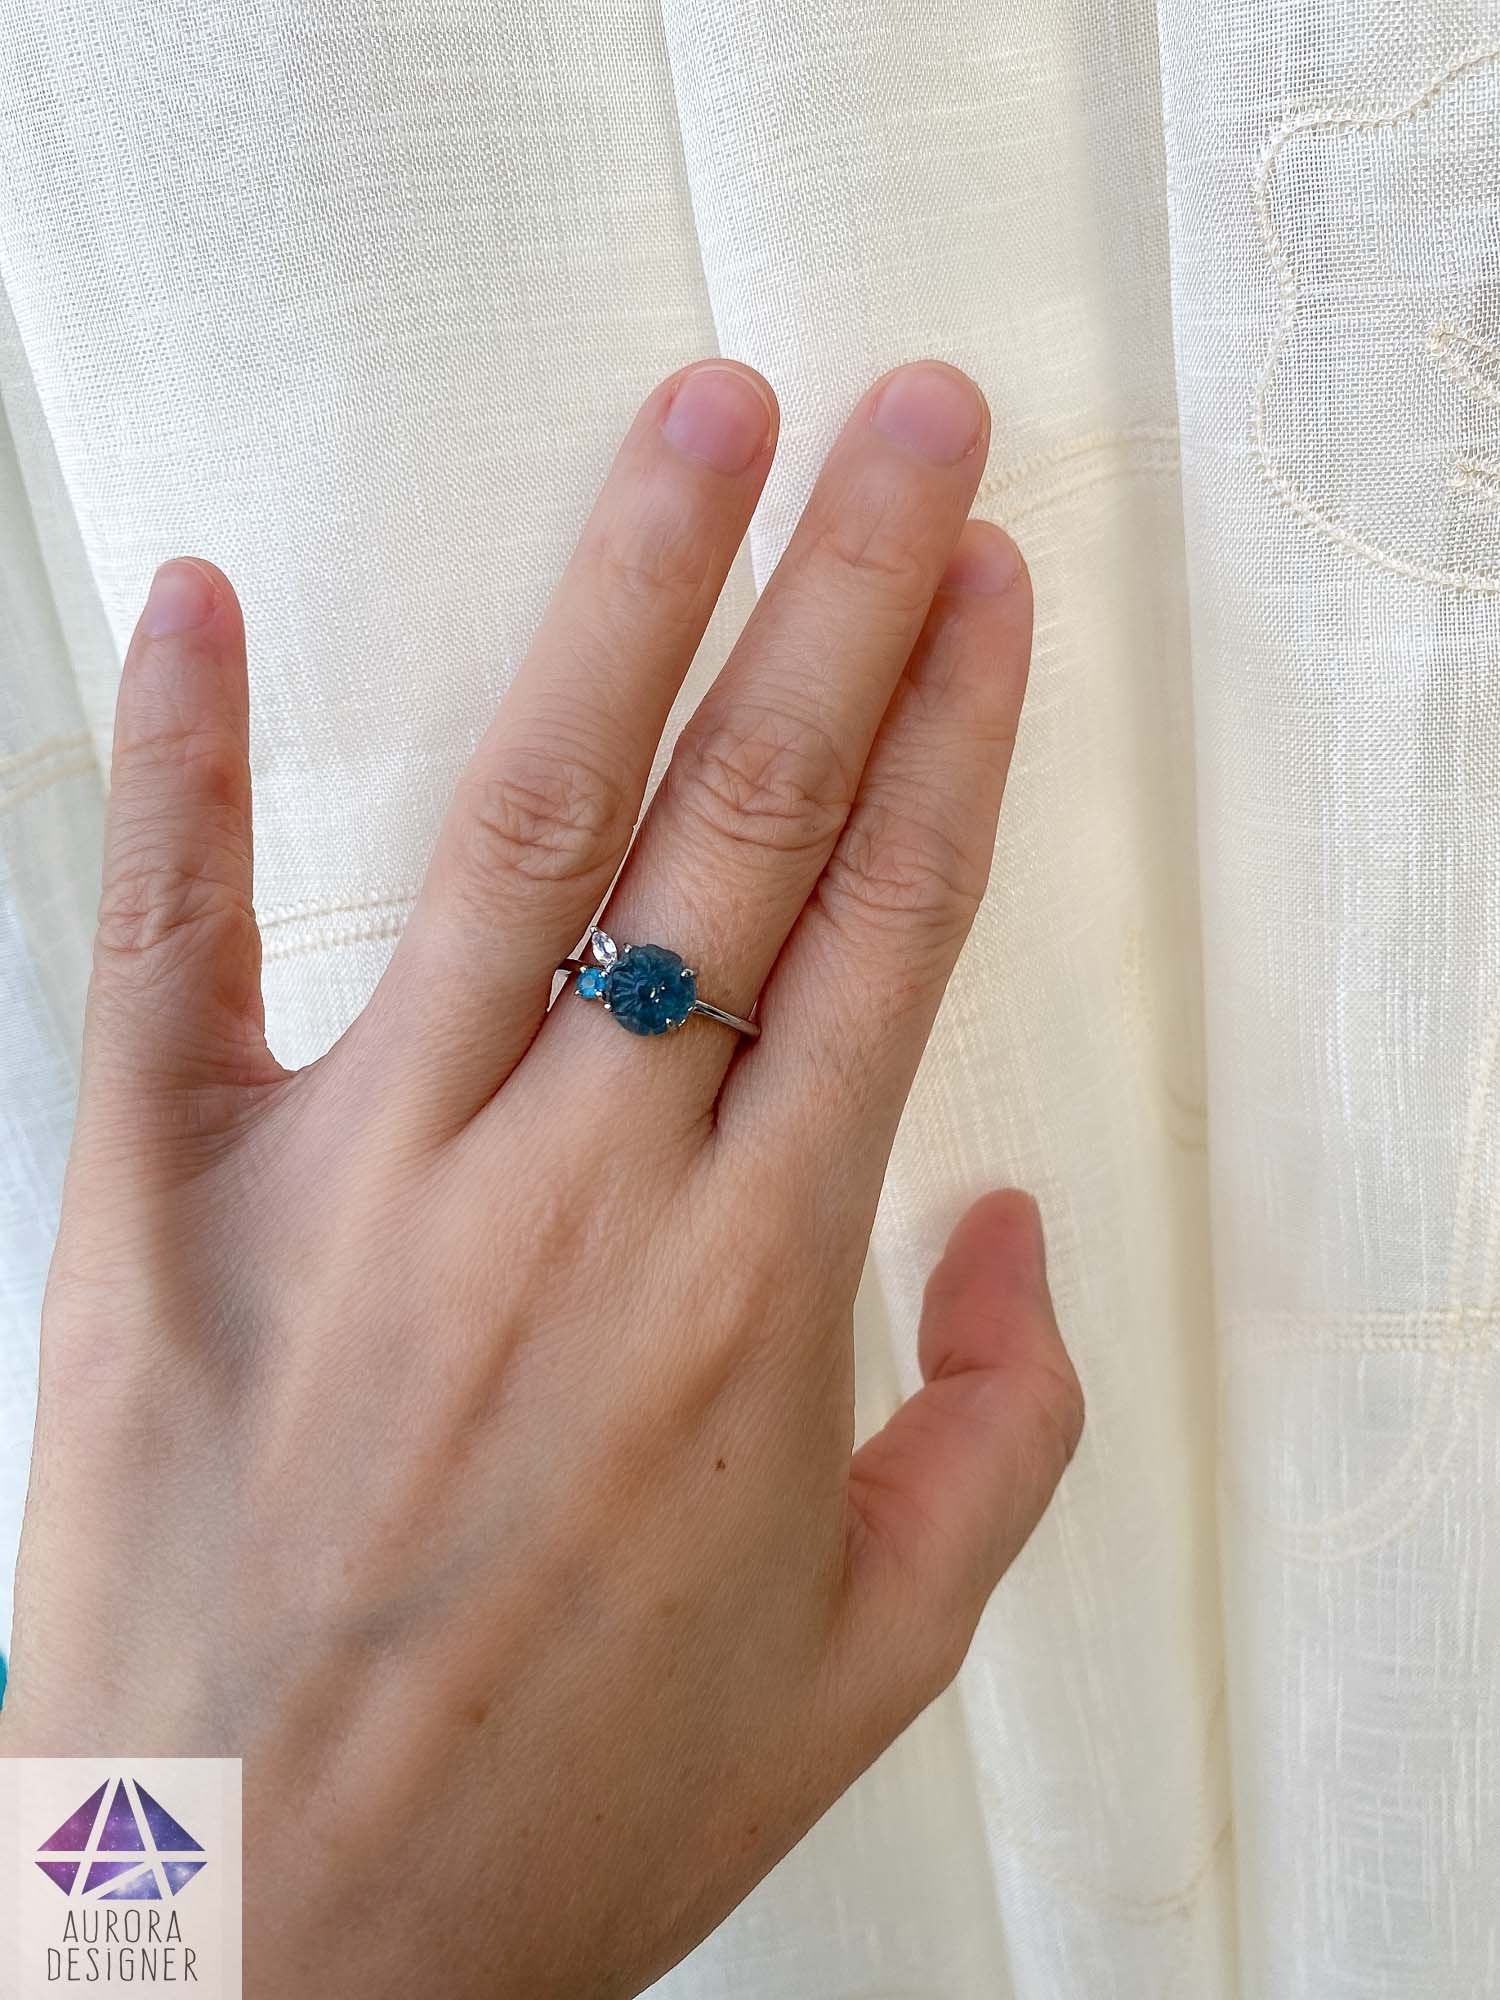 Estate 14KT White Gold Marquise Blue Sapphire + Diamond Flower Ring – LSJ